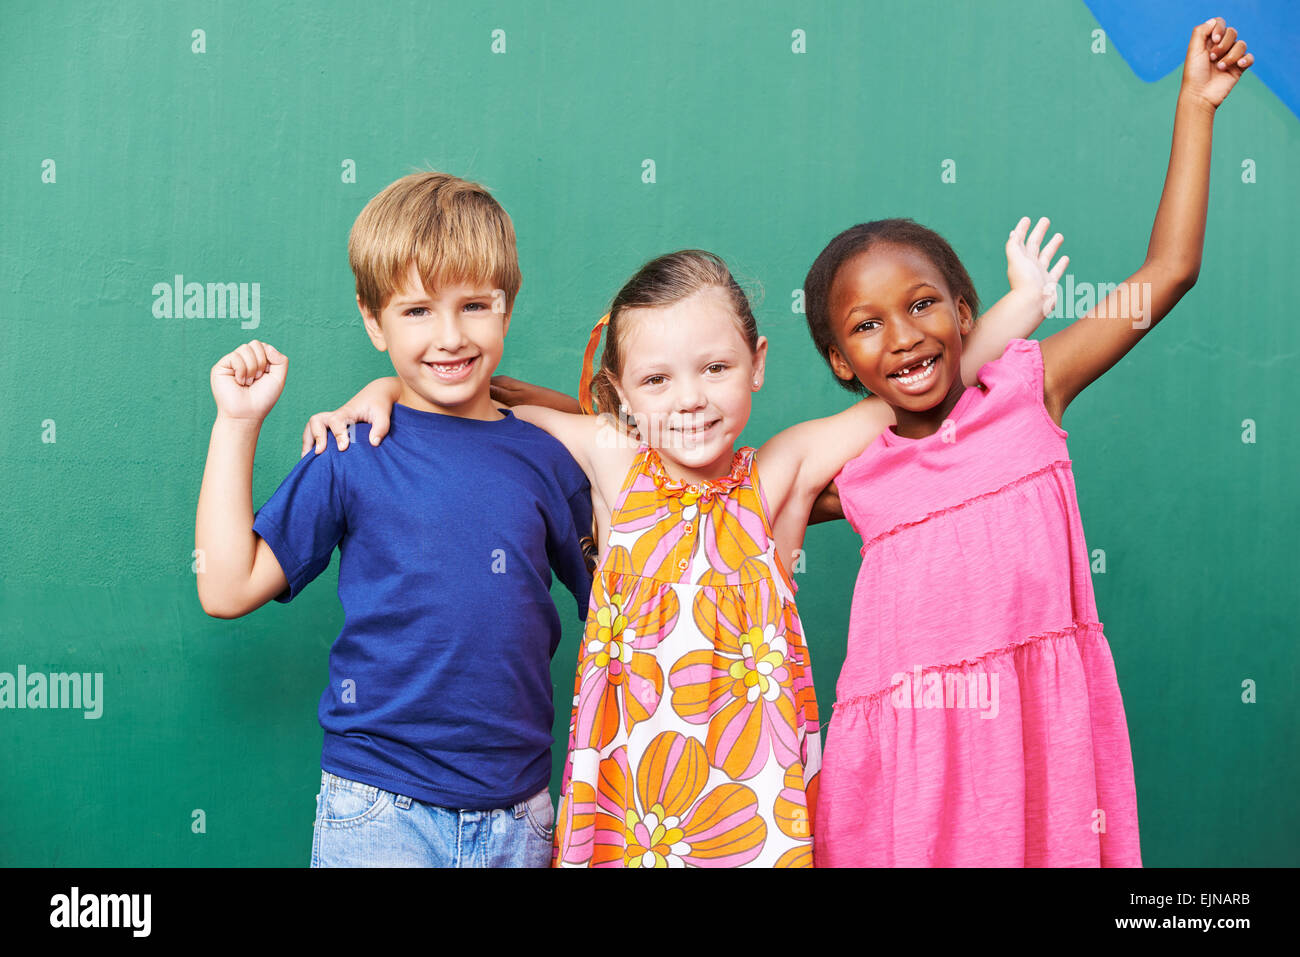 Cheering happy group of children in a kindergarten Stock Photo